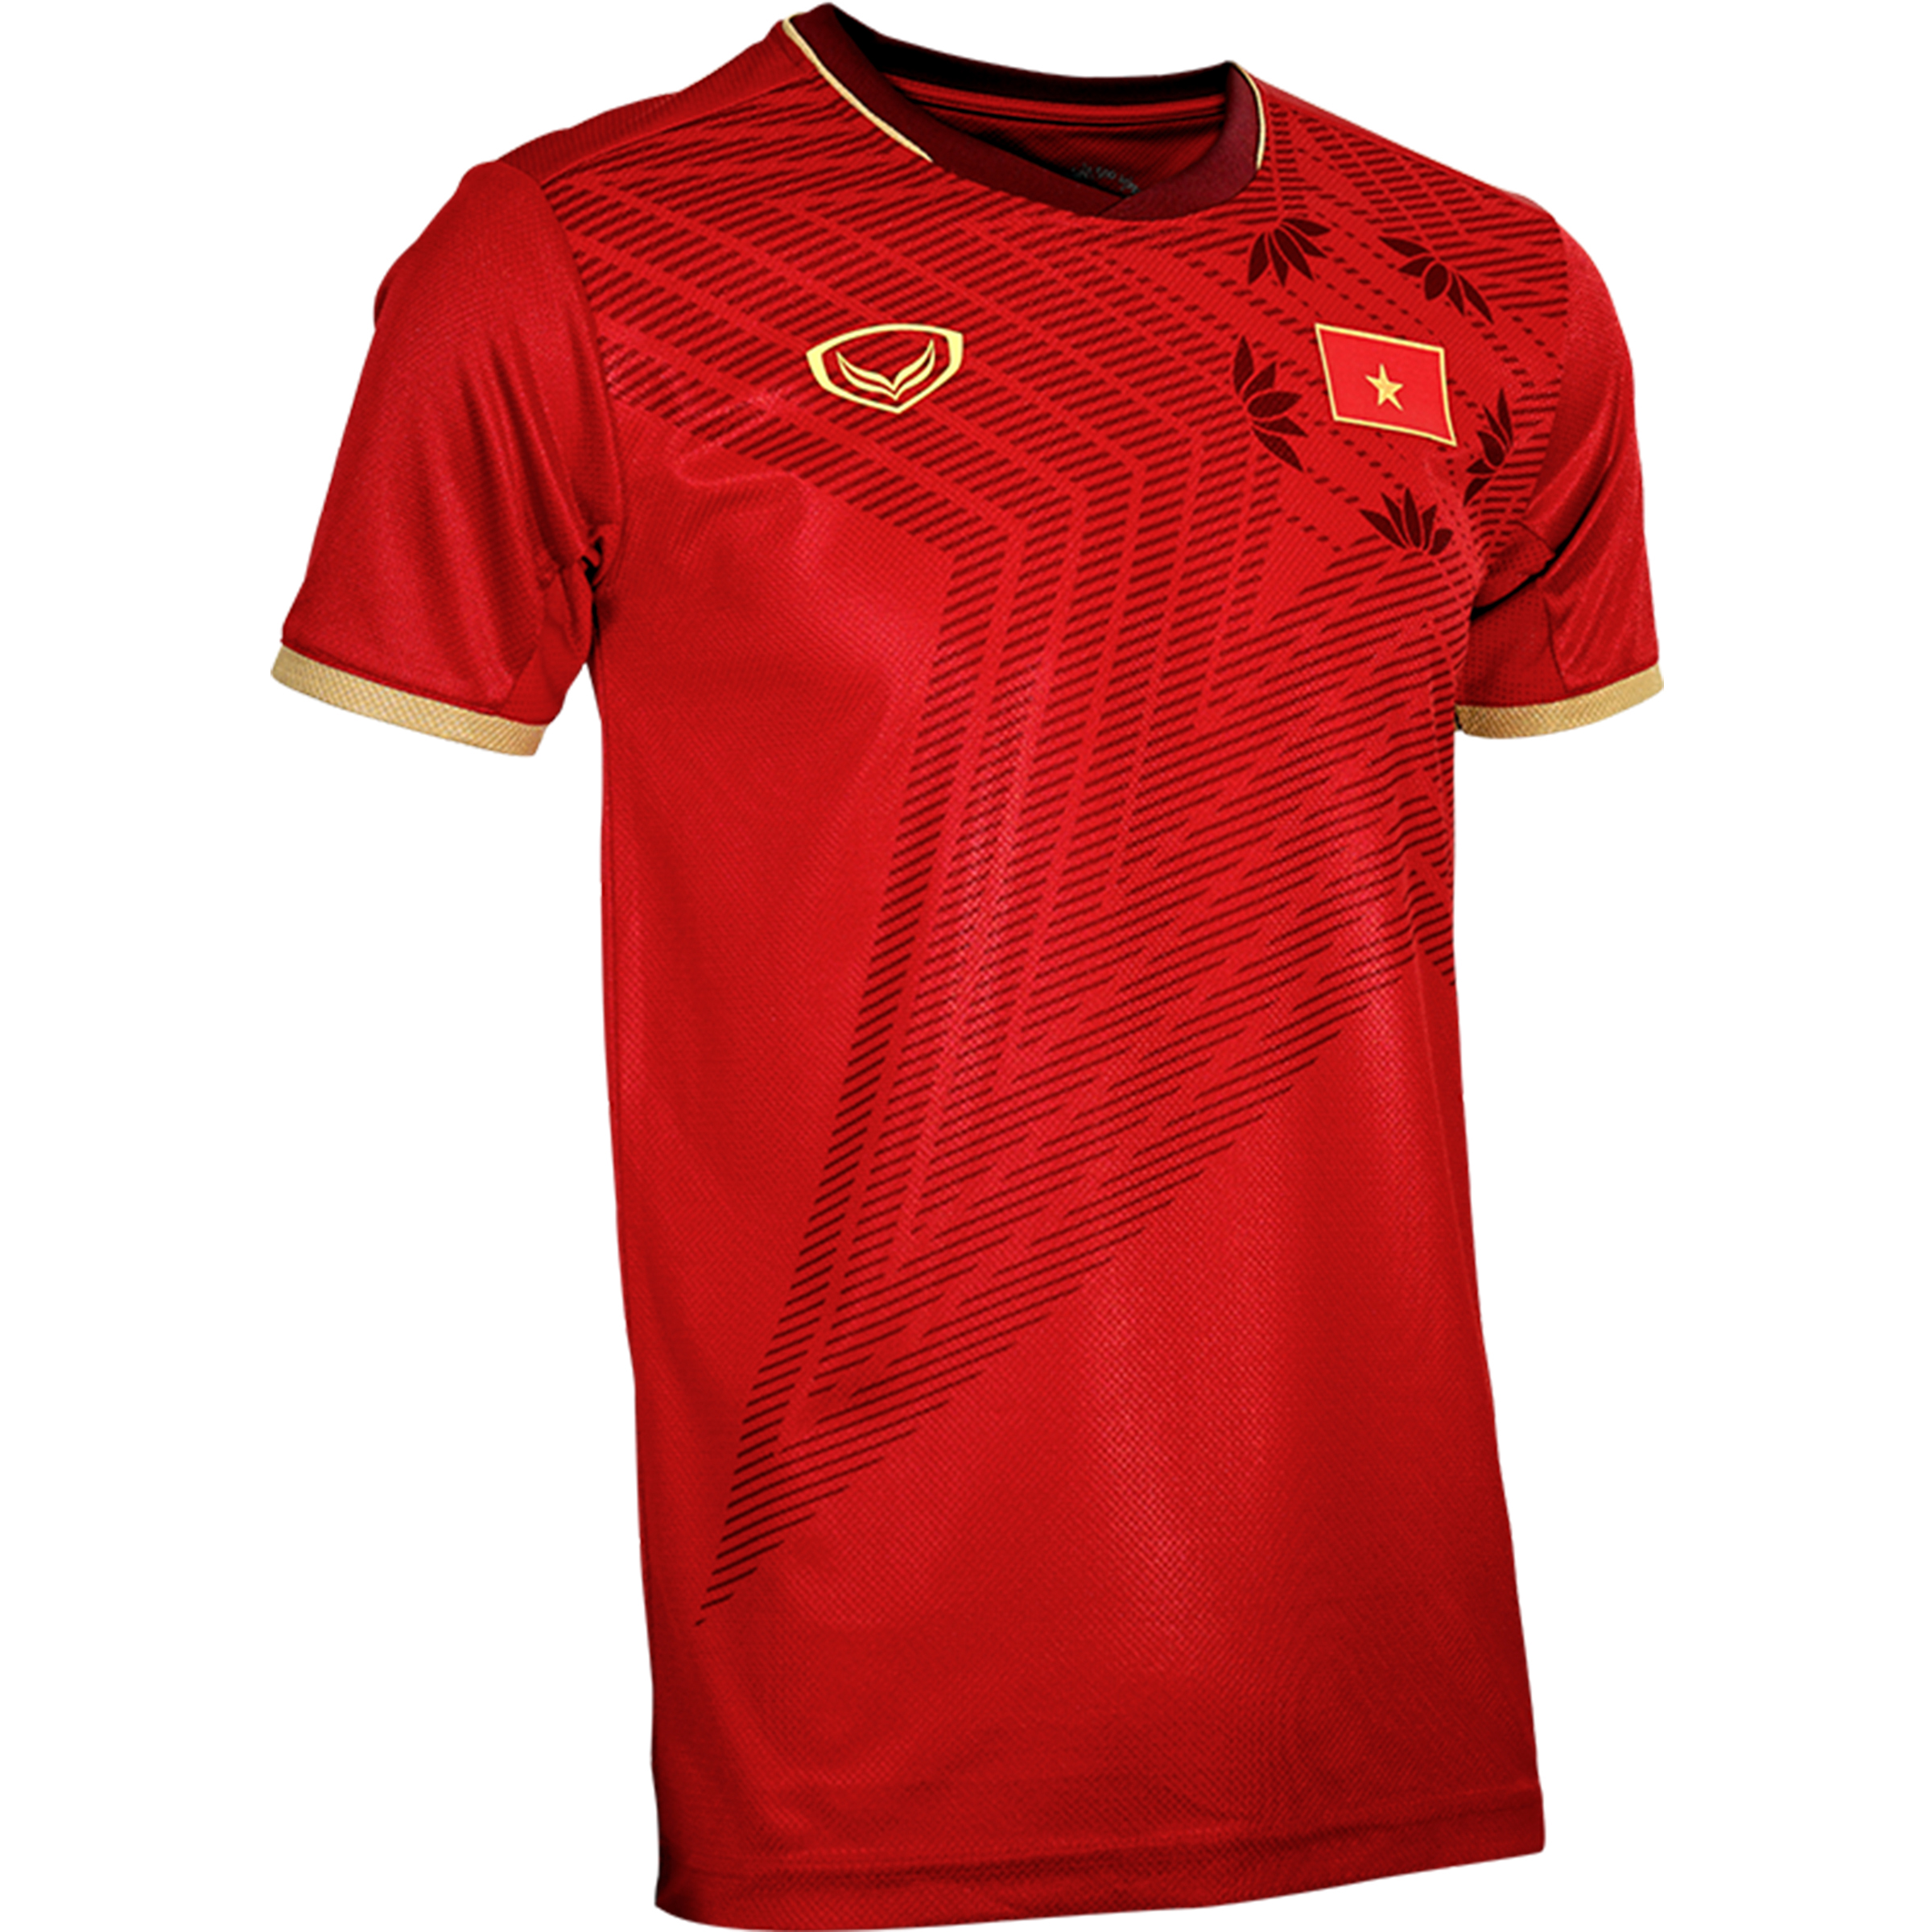 Football Soccer Jersey Shirt Red 